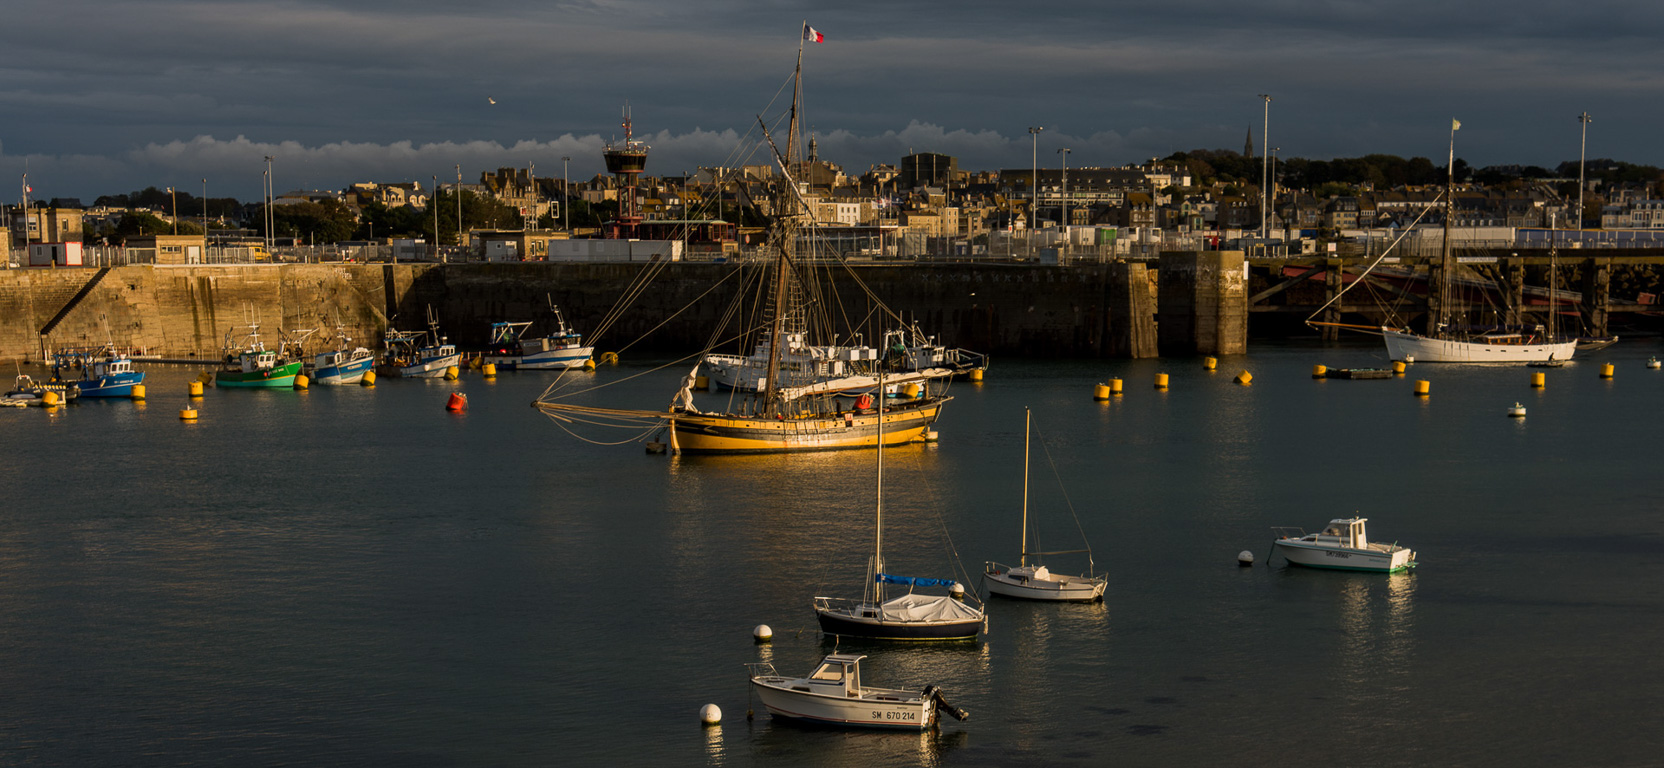 Saint-Malo. Le port du Môle et "le Renard" (réplique du bateau de Surcouf).